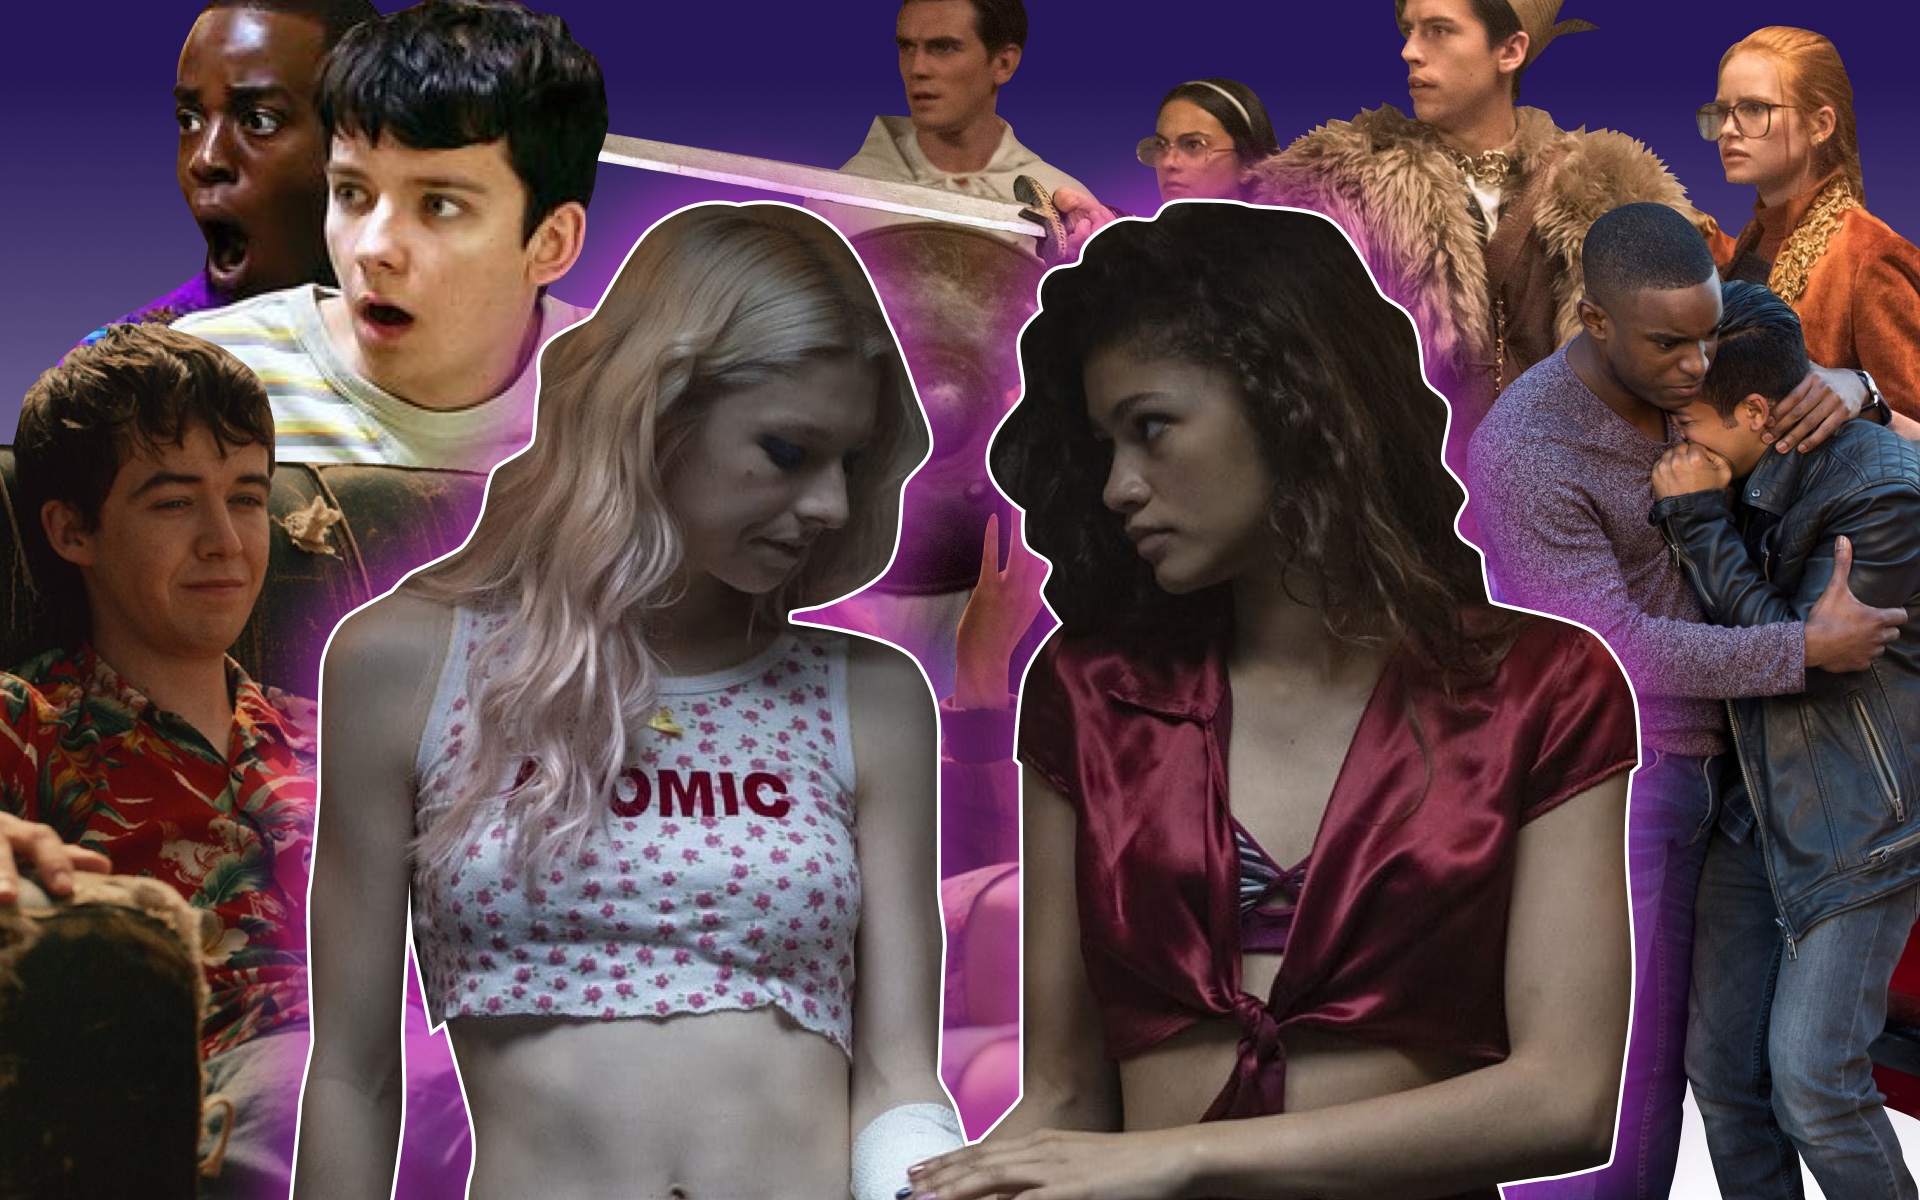 Секс, наркотики, бунтарство: 10 отличных сериалов про подростков